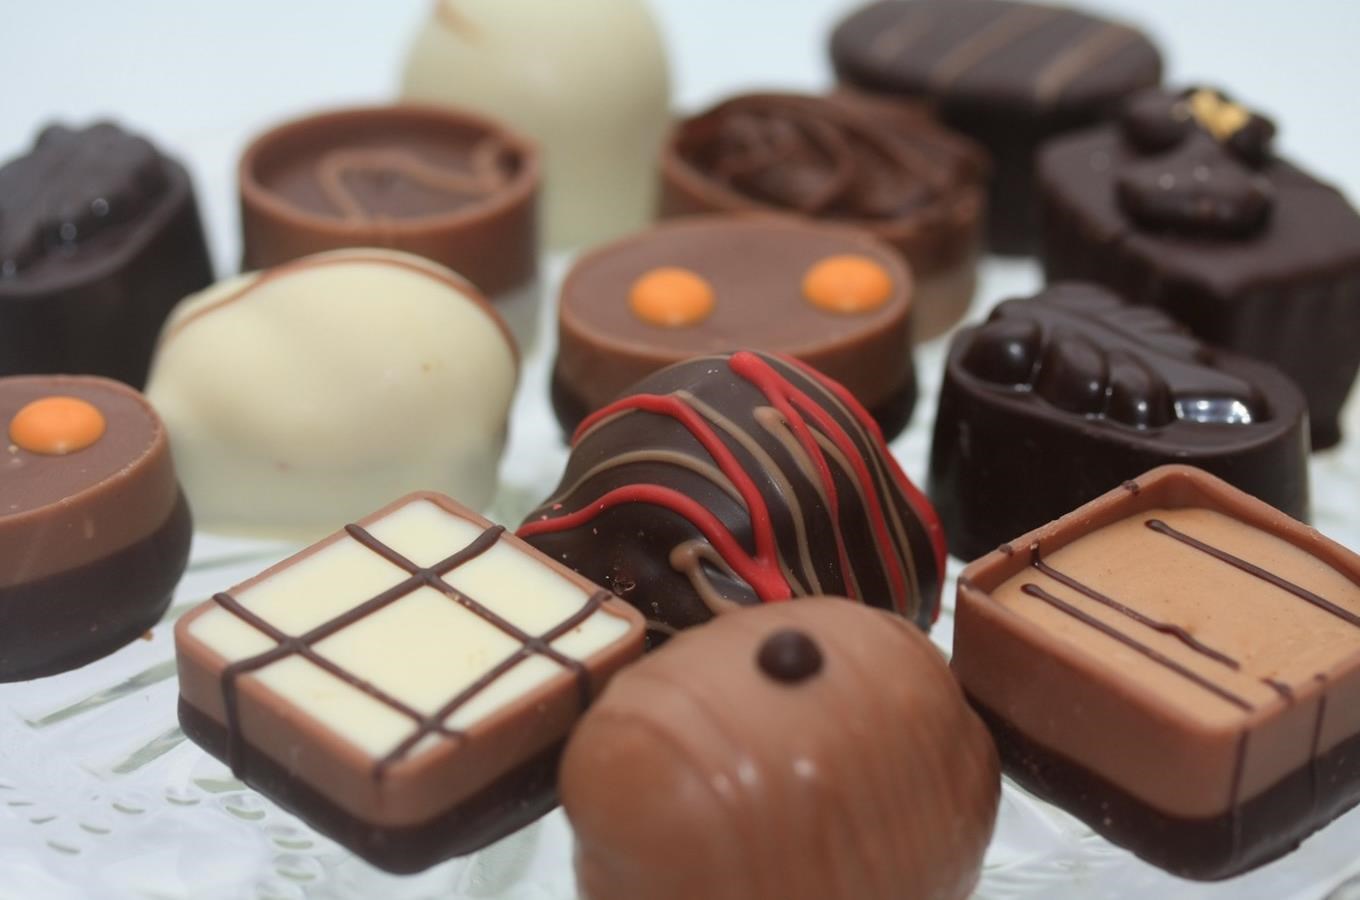 Čokoládovna a kavárna Minach - místo s jedinečnou čokoládou v Brně